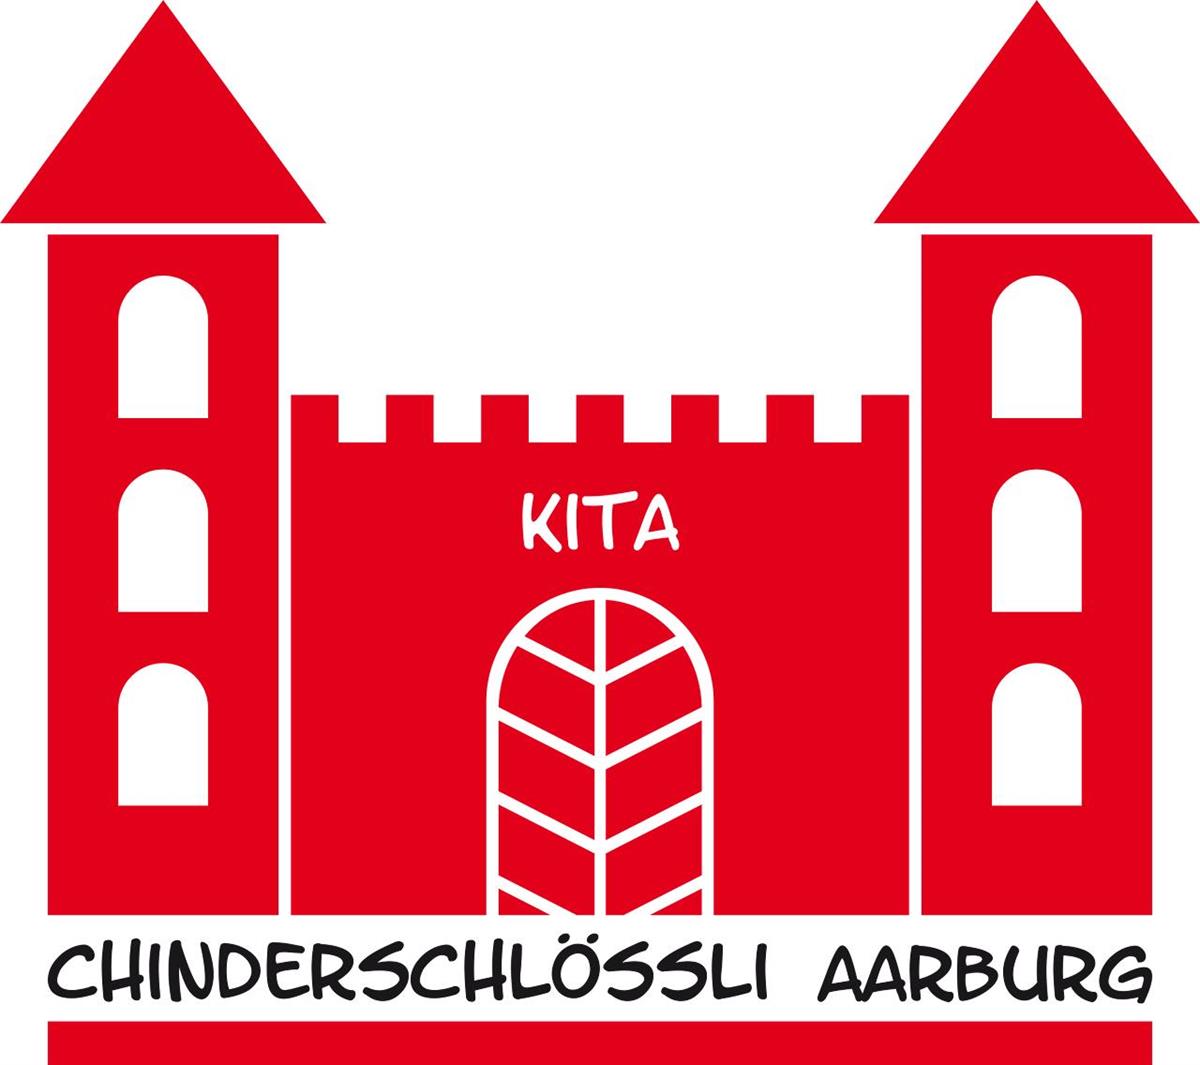 Kita Chinderschlössli Aarburg, Kleinkinderbetreuung, Kindergarten- und Schulkinder